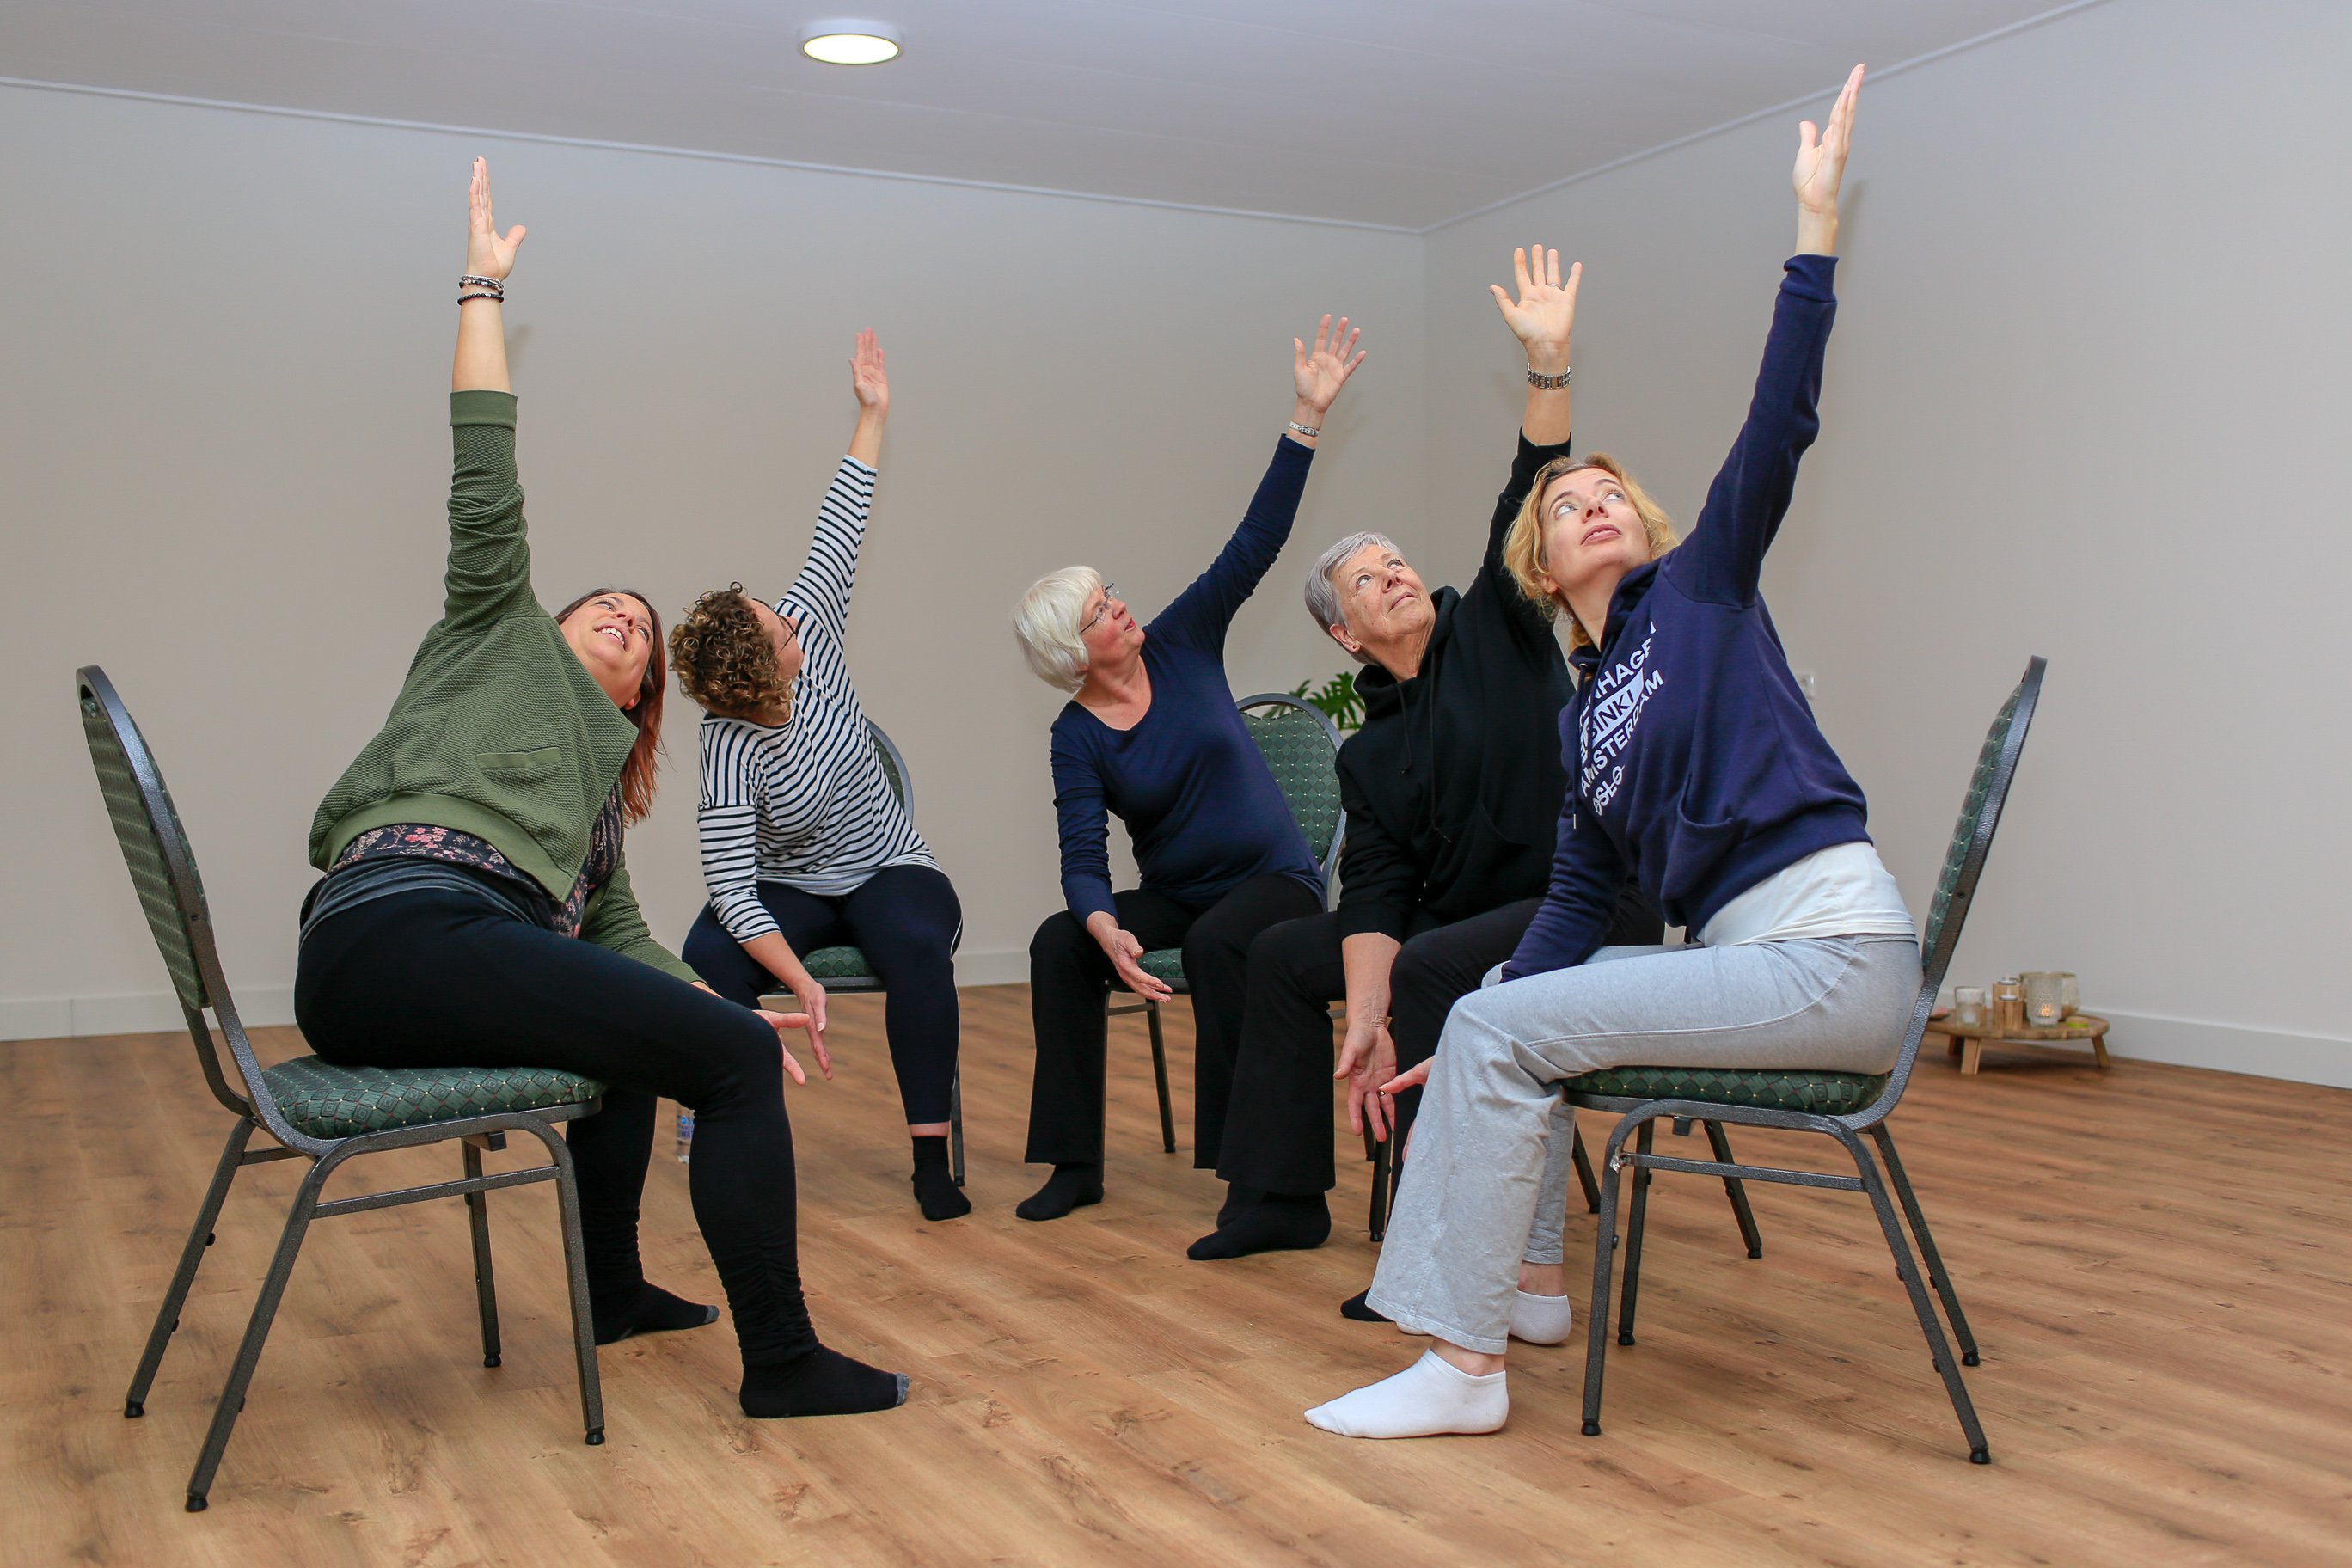 Vrouwen die yoga doen op stoelen